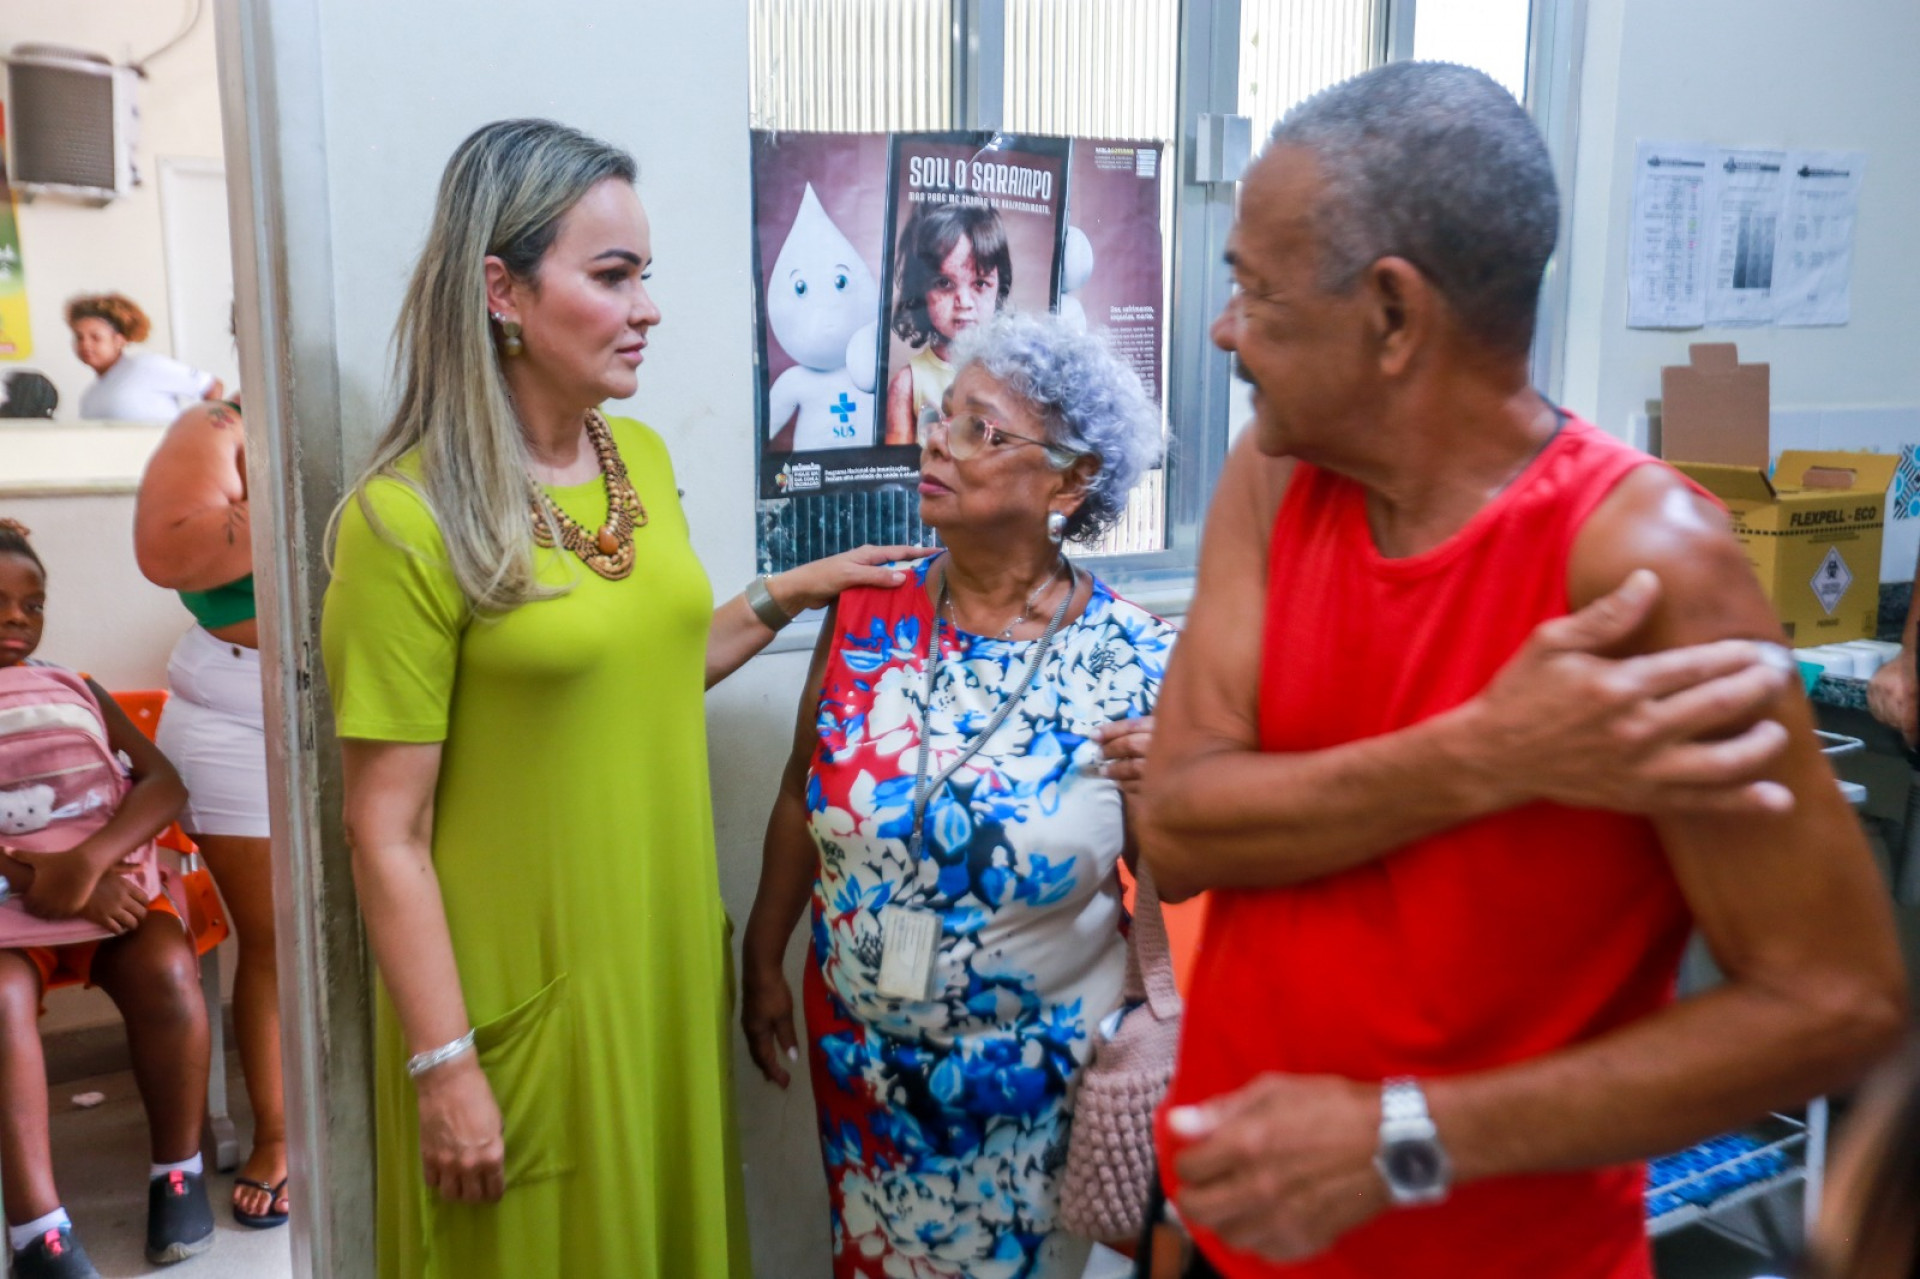 A deputada federal Daniela do Waguinho destacou que a campanha de vacinação é importante - Rafael Barreto/PMBR